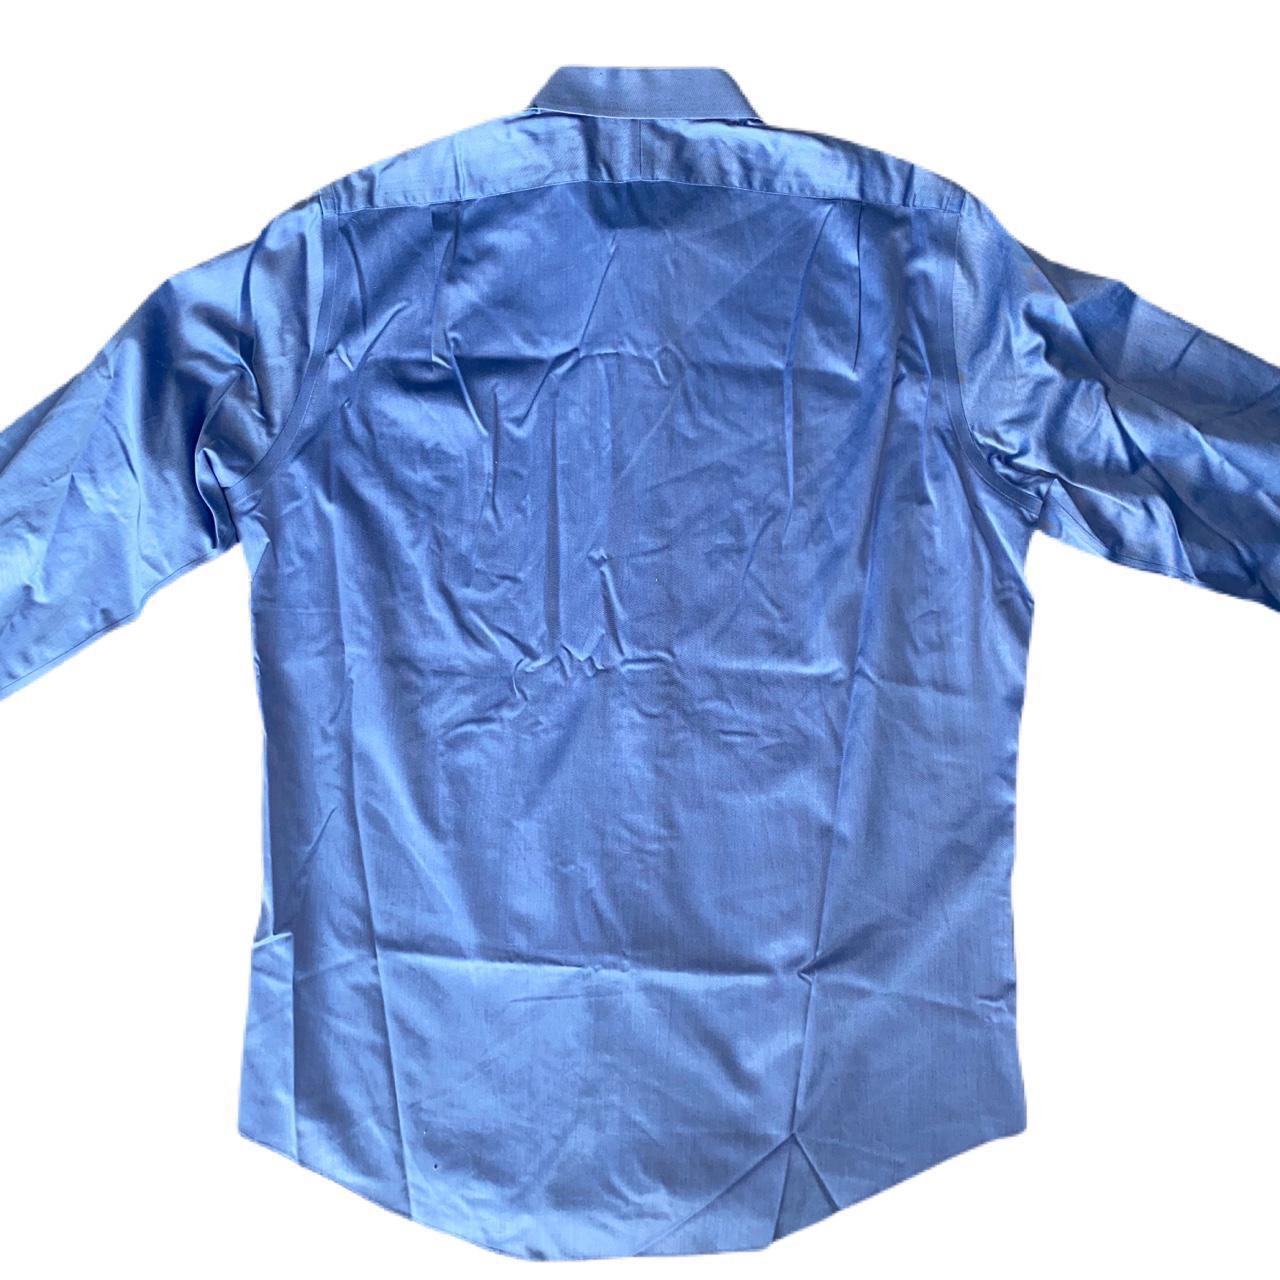 Nordstrom Rack Men’s Blue Dress Shirt Size 16 1/2 -... - Depop